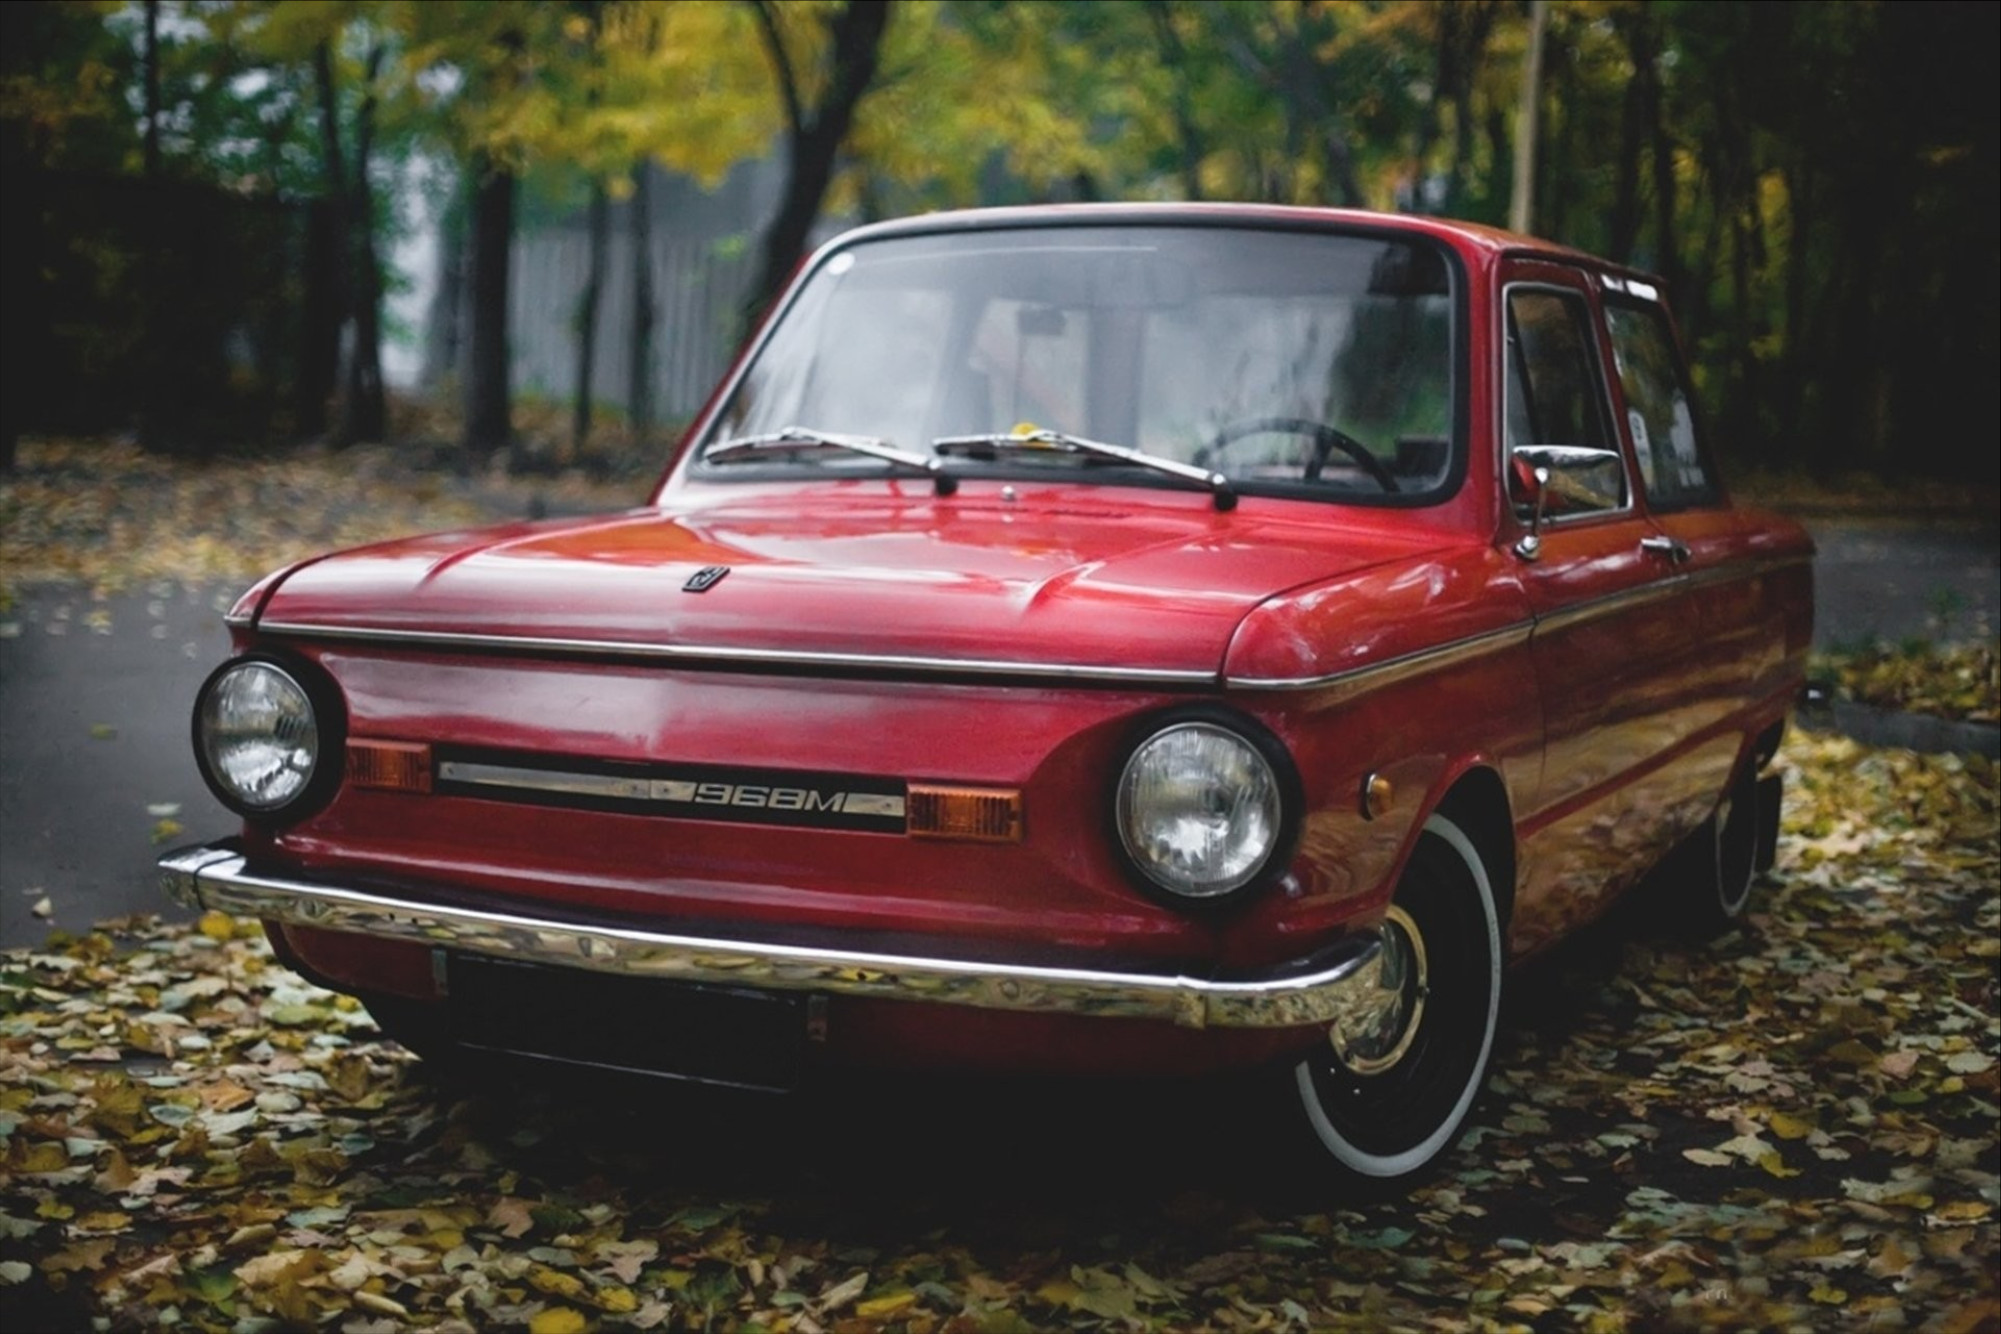 Красный  ЗАЗ-968М стоит на опавших листьях